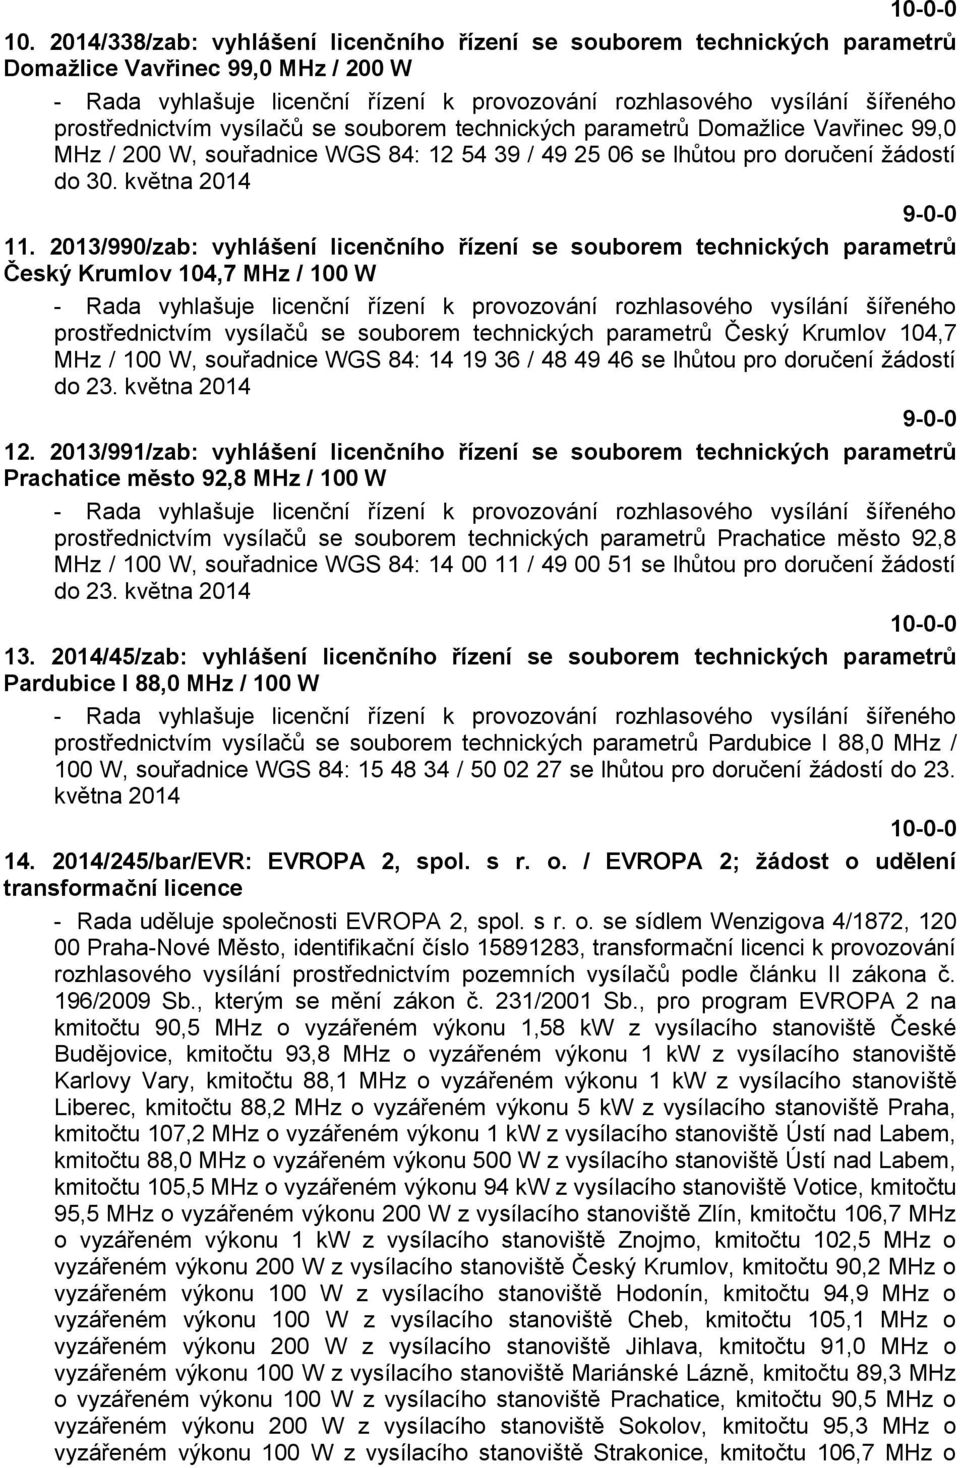 2013/990/zab: vyhlášení licenčního řízení se souborem technických parametrů Český Krumlov 104,7 MHz / 100 W - Rada vyhlašuje licenční řízení k provozování rozhlasového vysílání šířeného